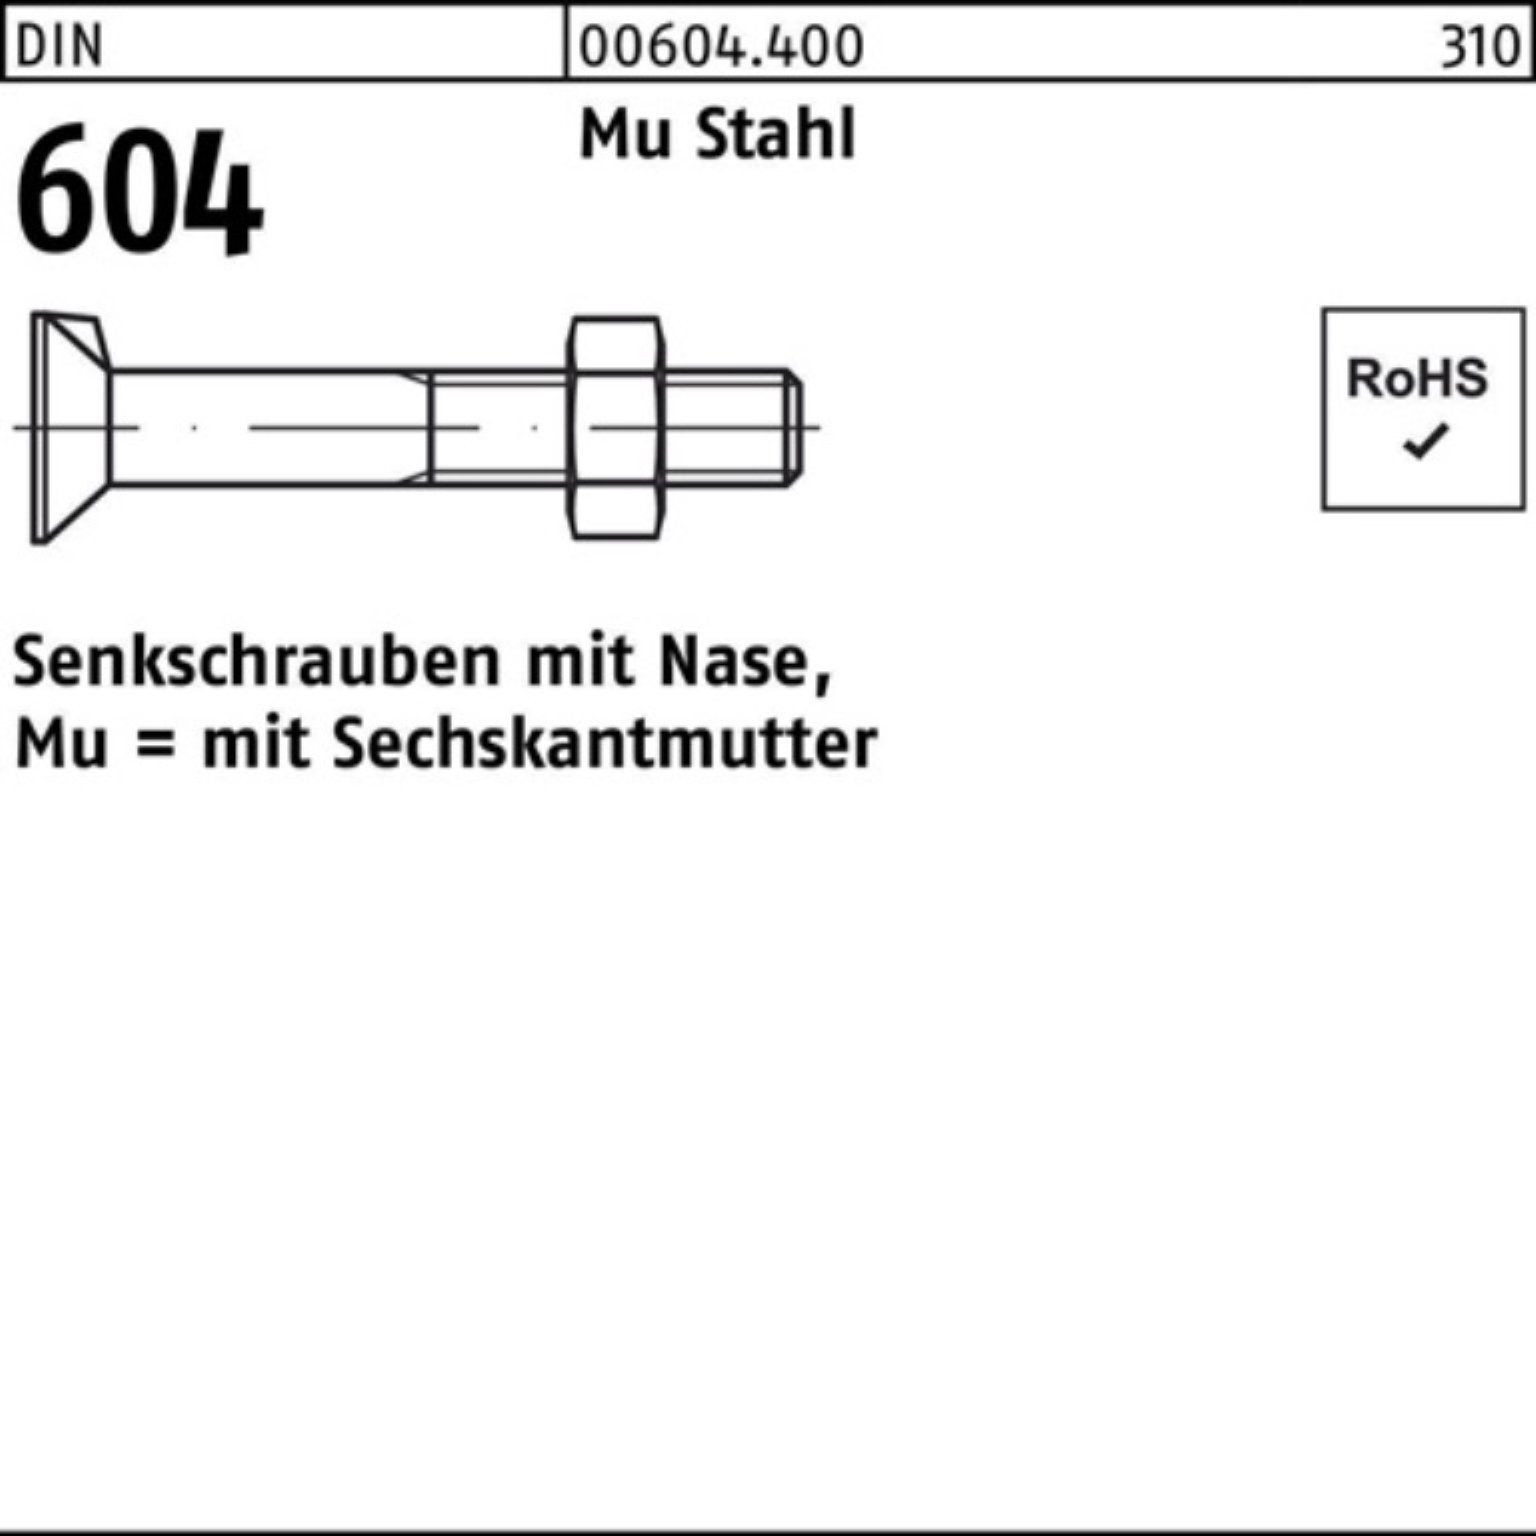 Reyher Senkschraube 100er Pack Senkschraube DIN 604 Nase/6-ktmutter M12x 40 Mu Stahl 4.6 1